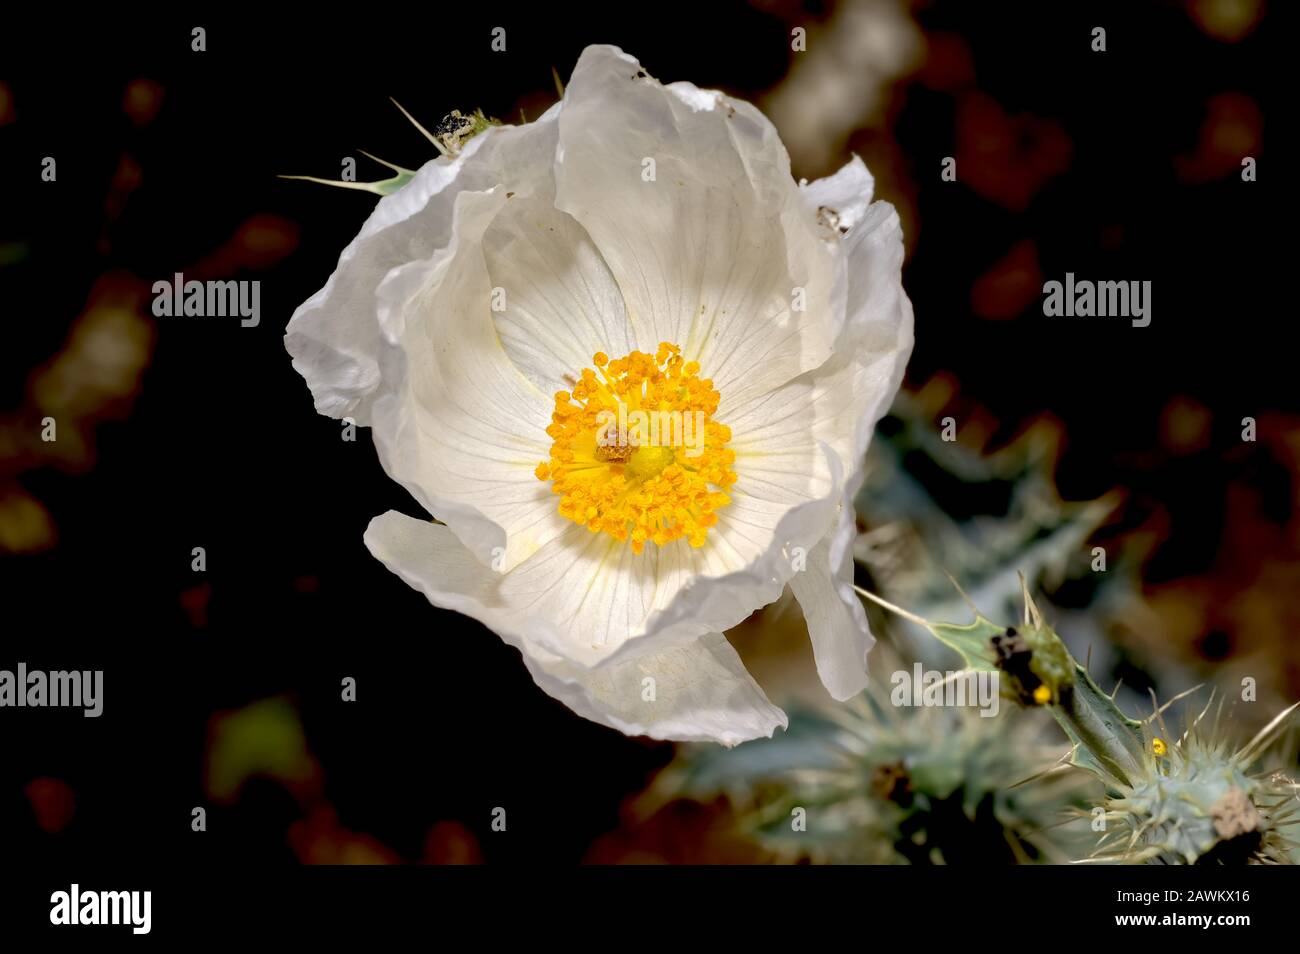 La fleur blanche de la coquelicot d'faucille du sud-ouest. Cette mauvaise herbe nocive pousse sauvage dans de nombreuses régions du sud-ouest américain, y compris en Arizona. Ça m’obtient Banque D'Images